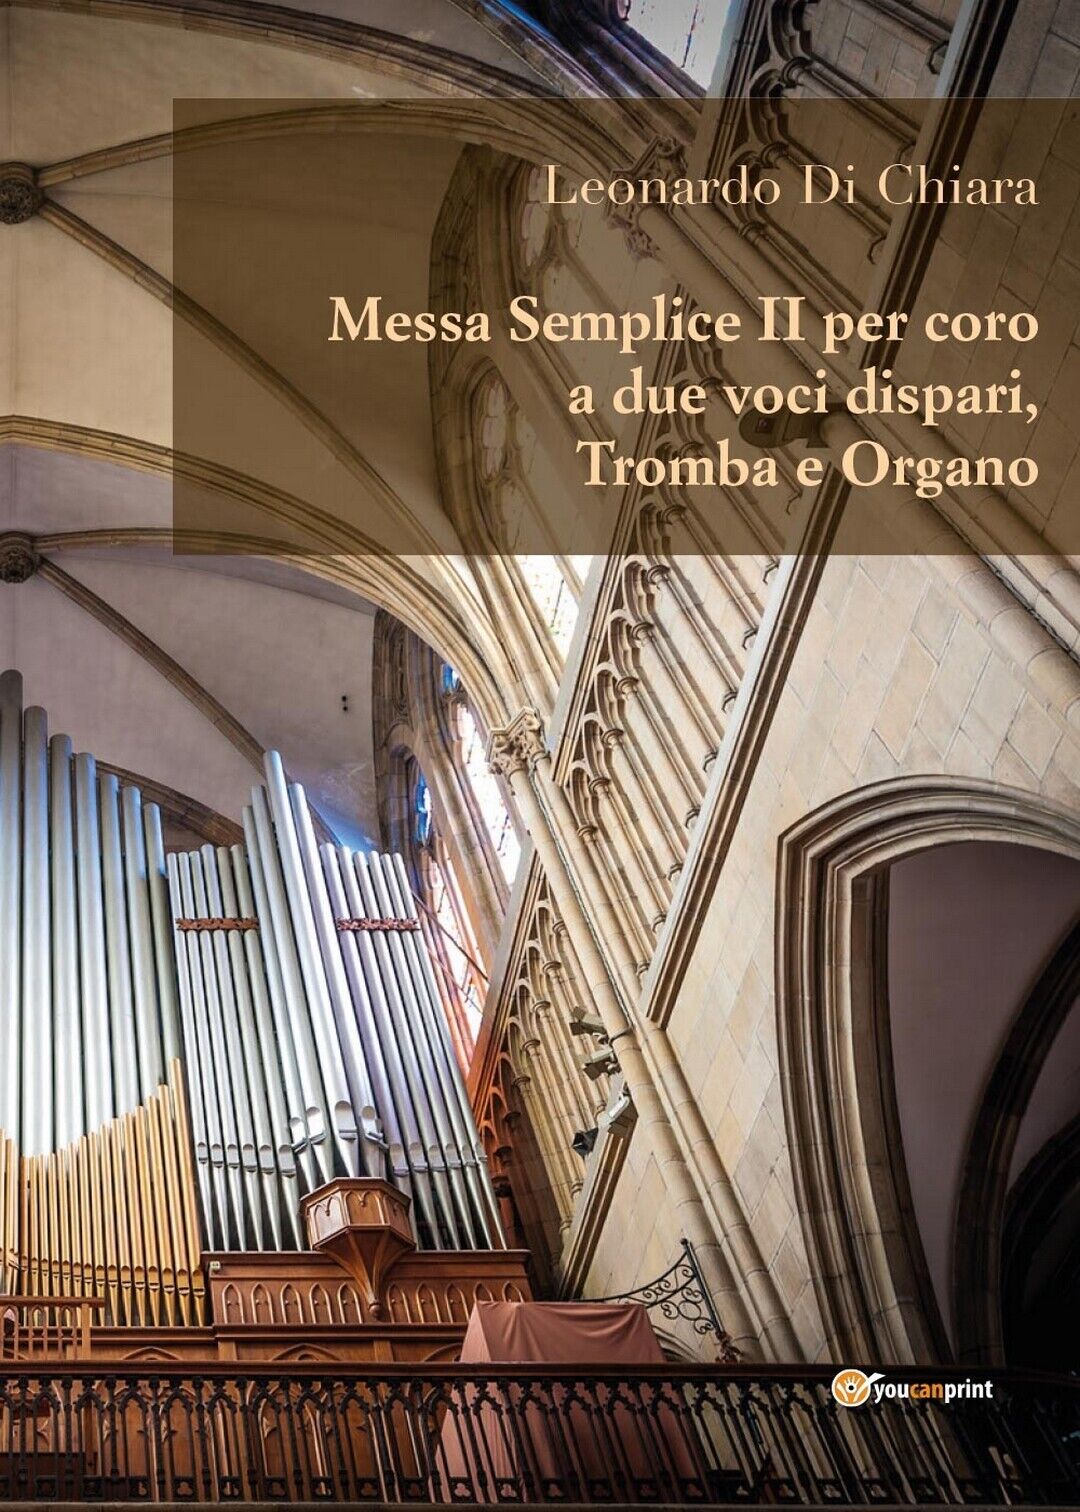 Messa Semplice II per coro a due voci dispari, Tromba e Organo (L. Di Chiara) libro usato